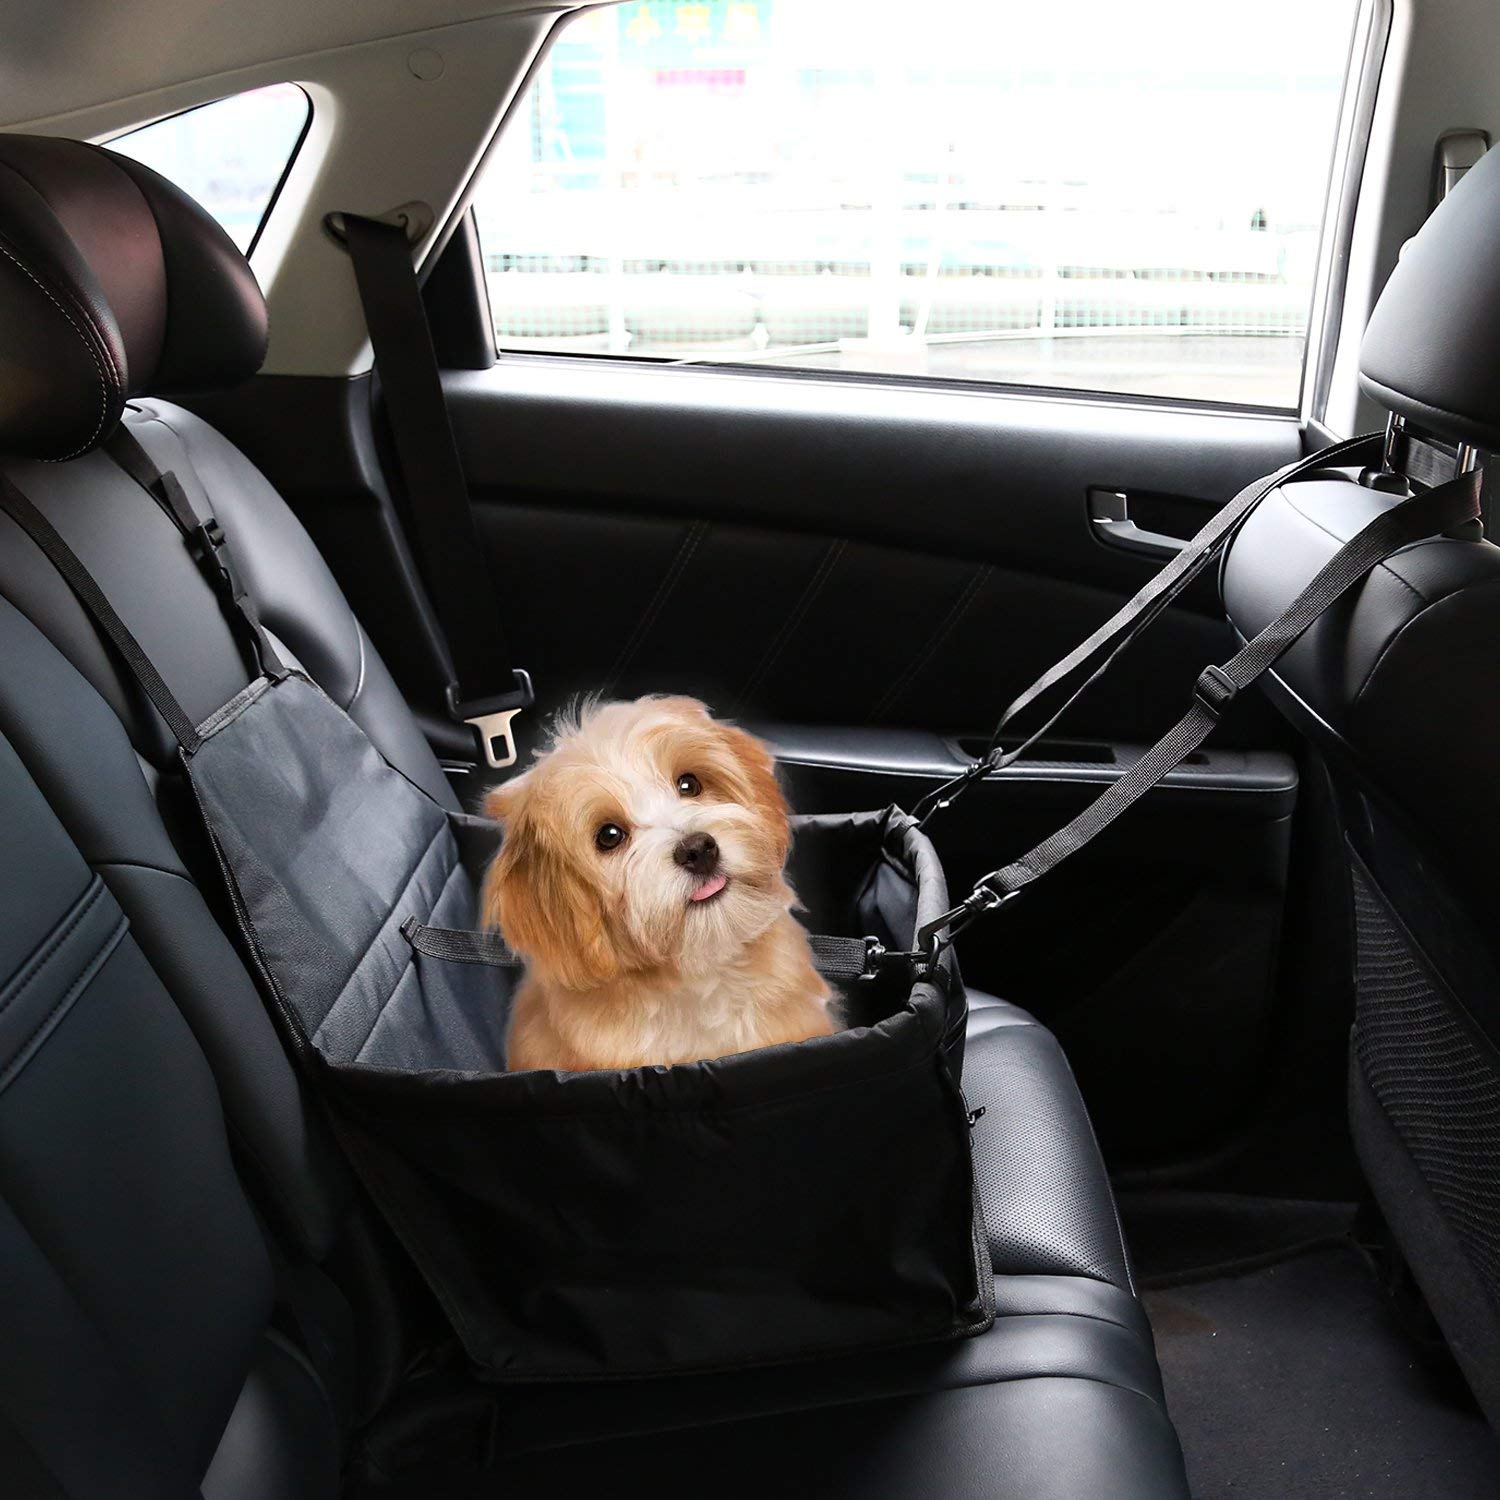 IvyLife Auto-Hundesitz für Kleine Hunde oder Katzen Transporttasche verstellbar aus Oxford-Stoff Wasserdicht Atmungsaktiv Haustier Sicherheit Auto Sitz Doppelt Schicht Verdickt Haustier (Schwarz)